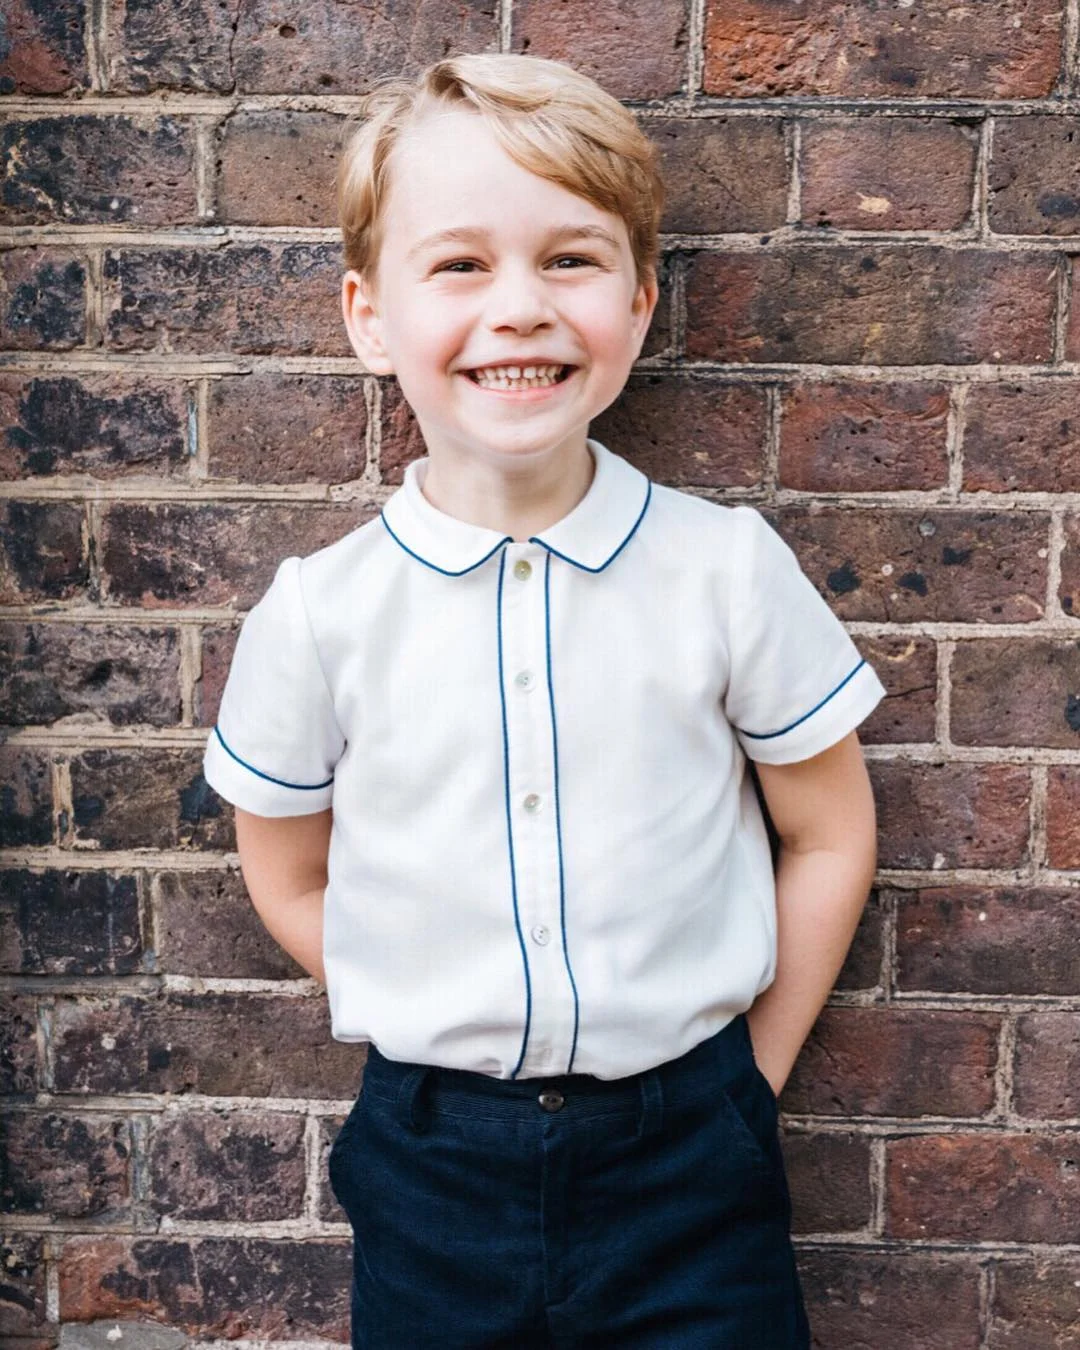 Маленький модник: 5-летний принц Джордж стал одним из самых стильных людей Британии - фото 396216